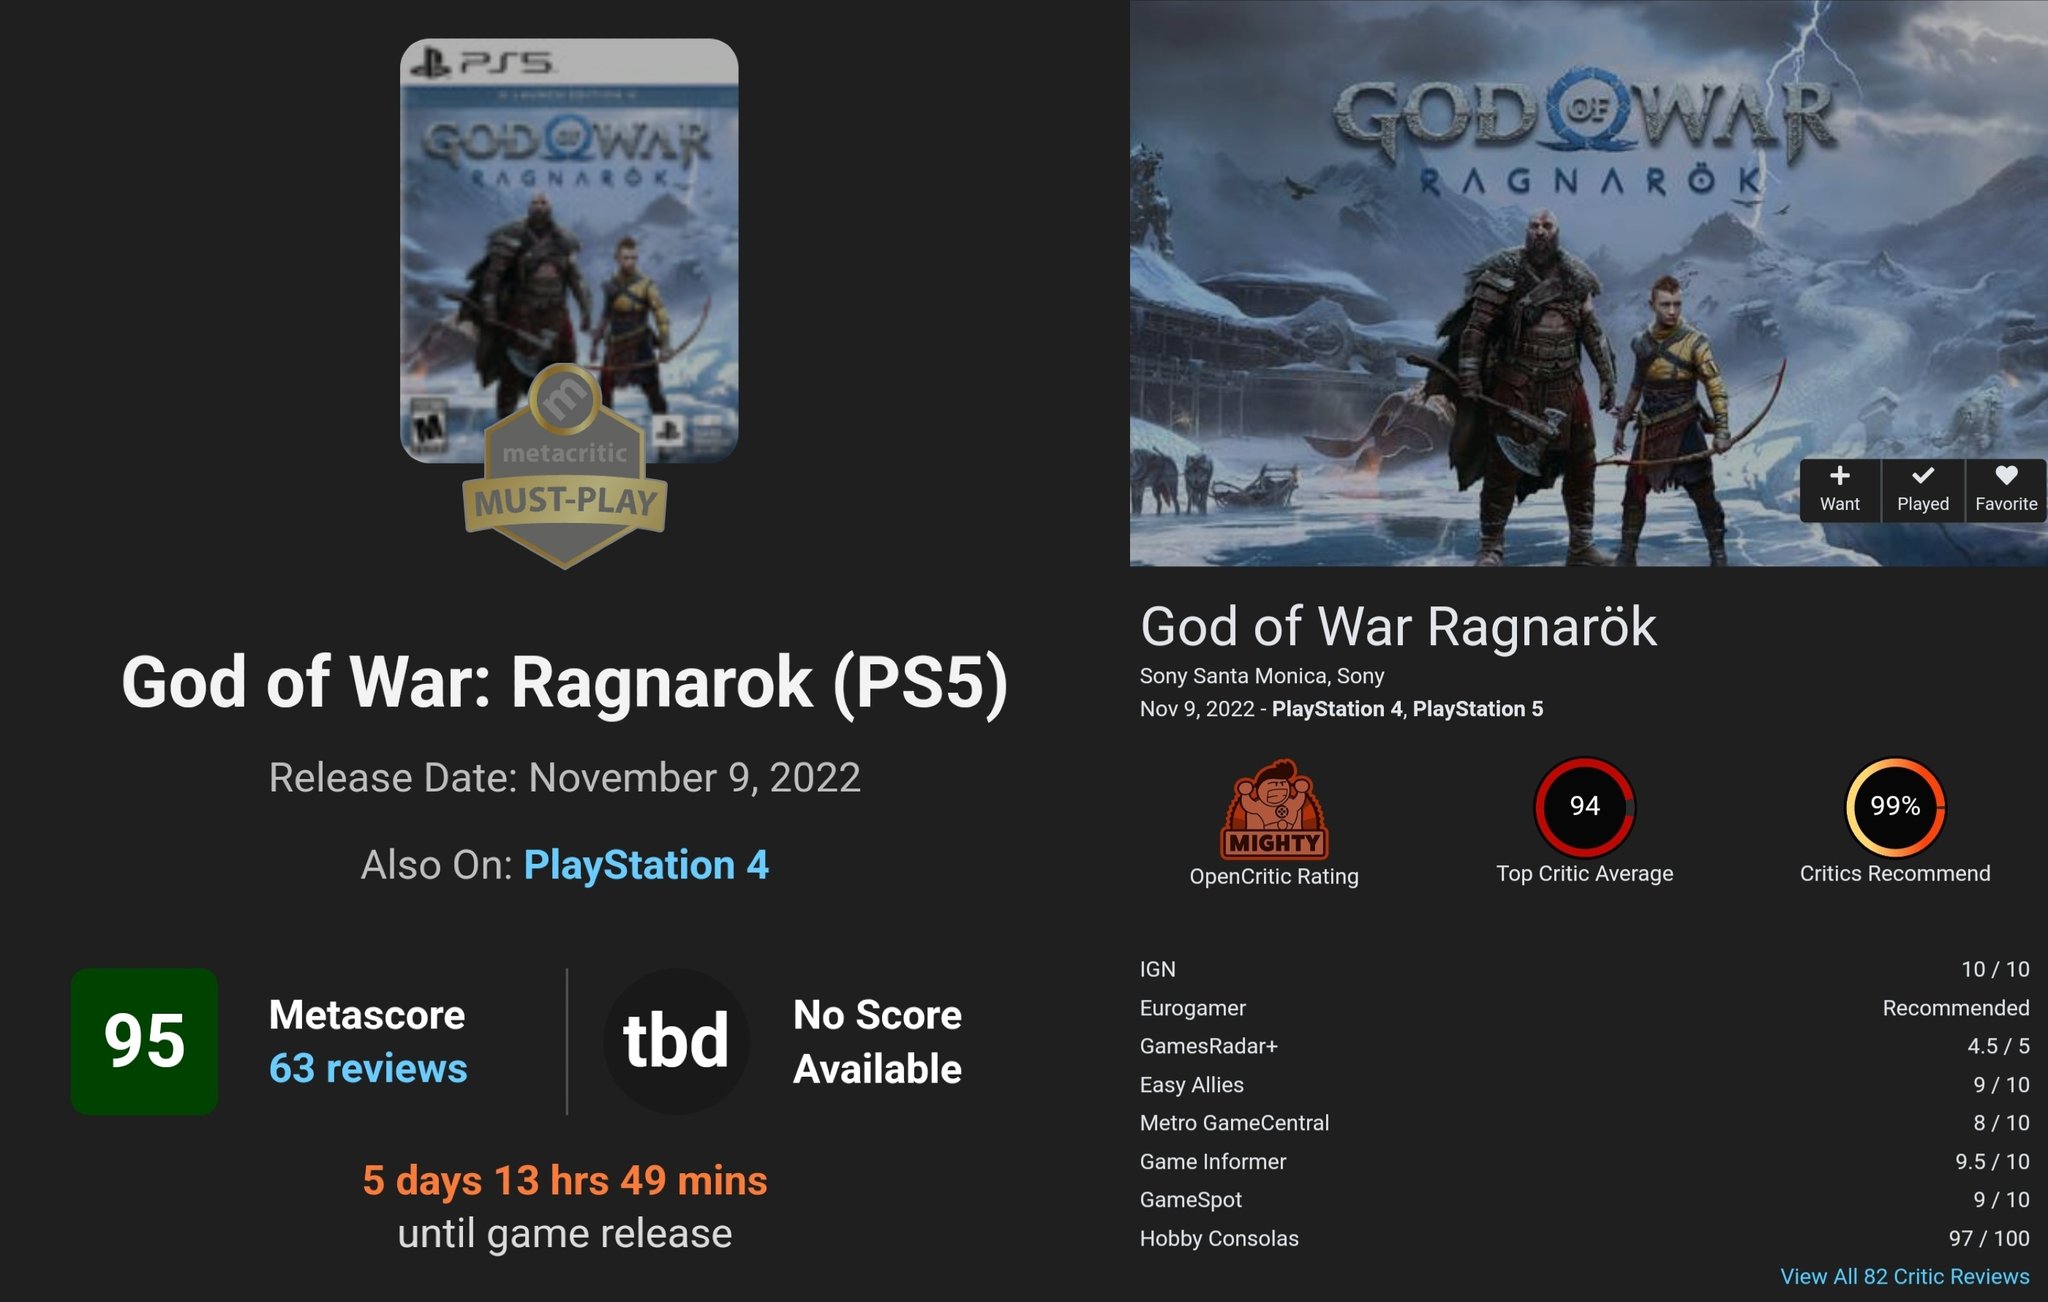 God of War III Review - GameSpot